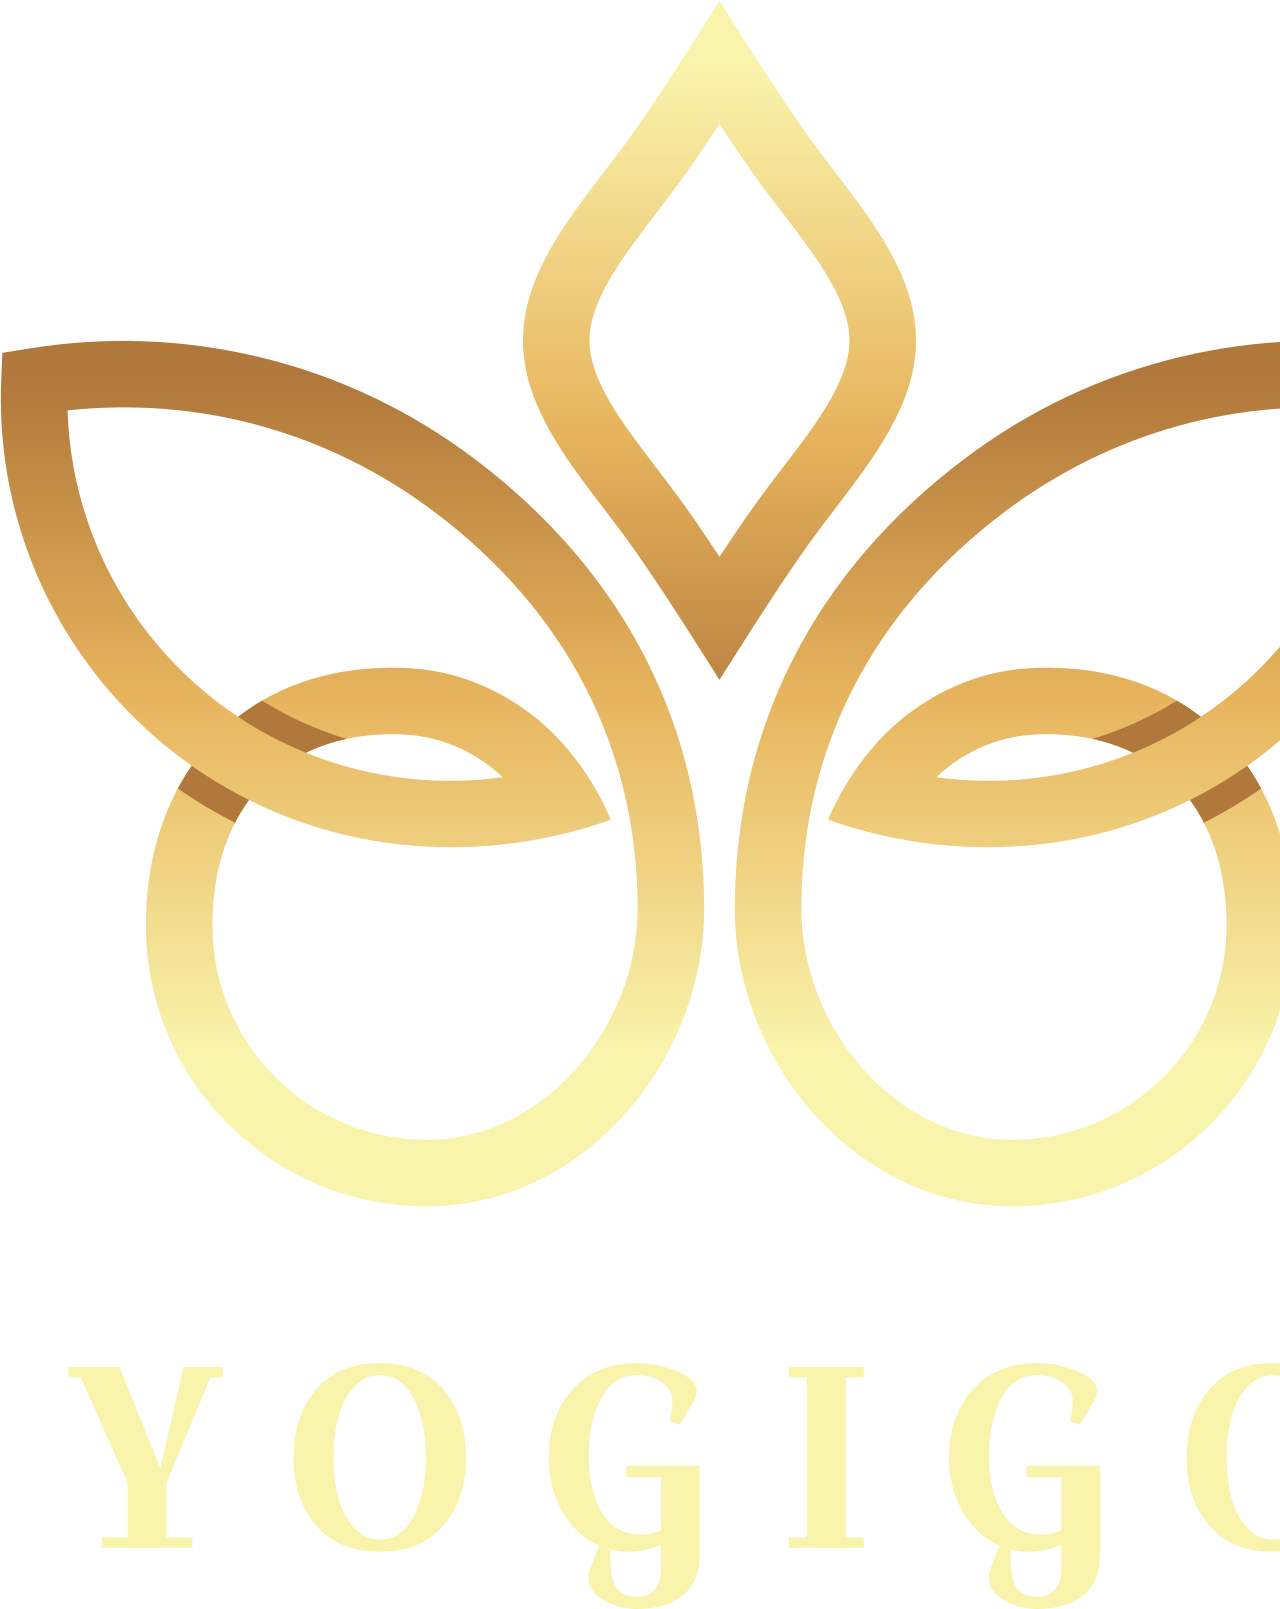 Yogigo's logo